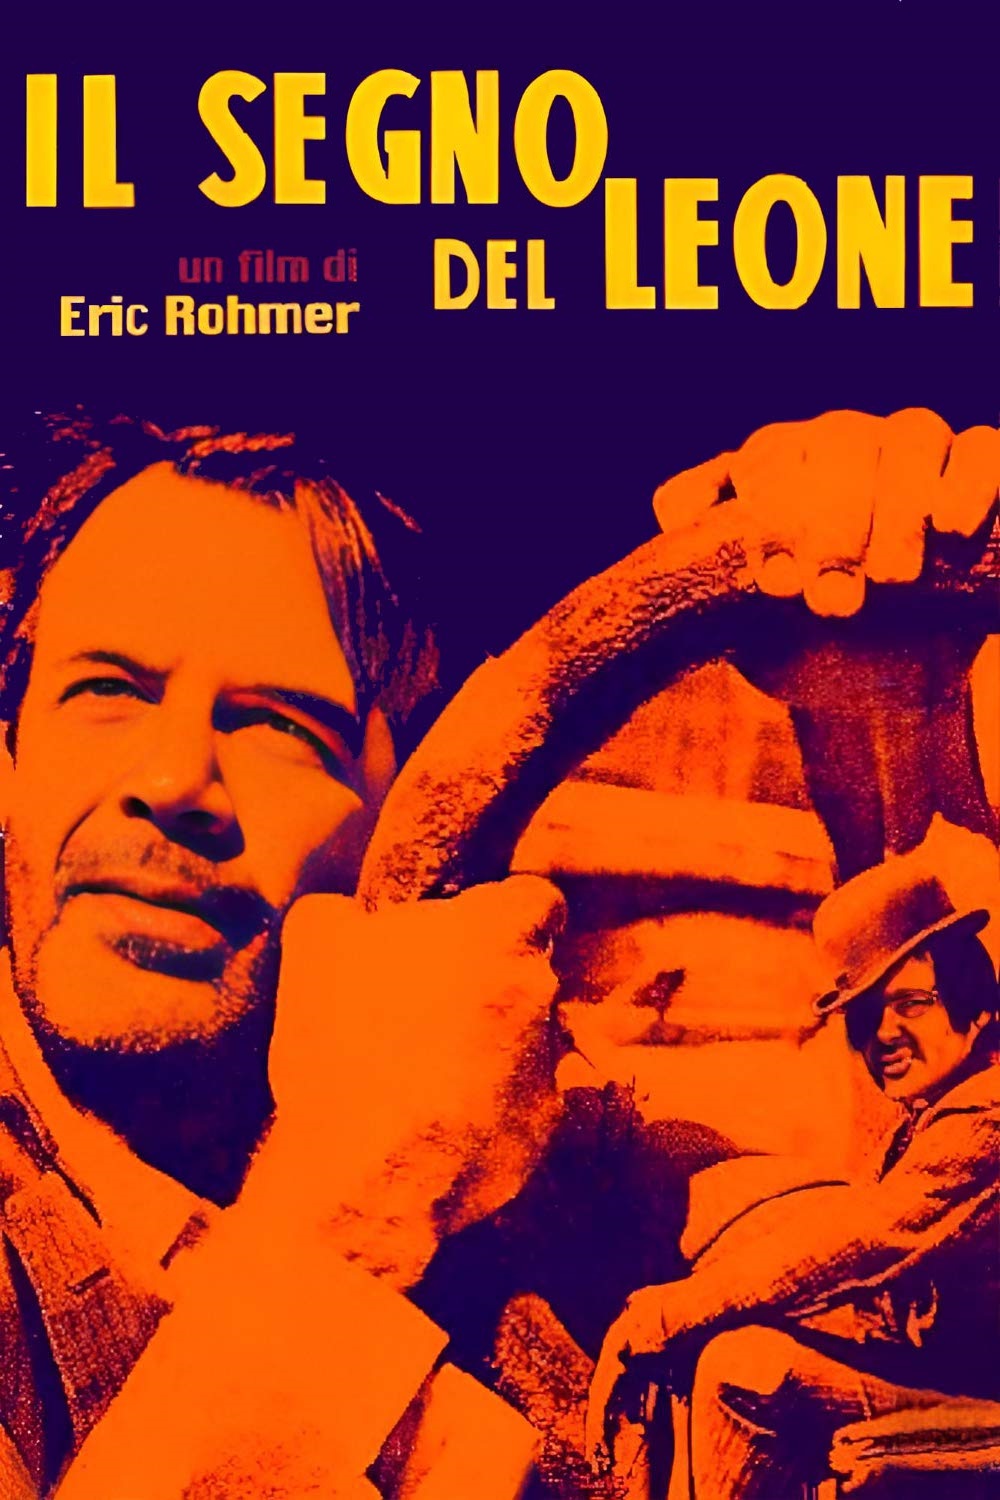 Il segno del leone [B/N] [HD] (1959)